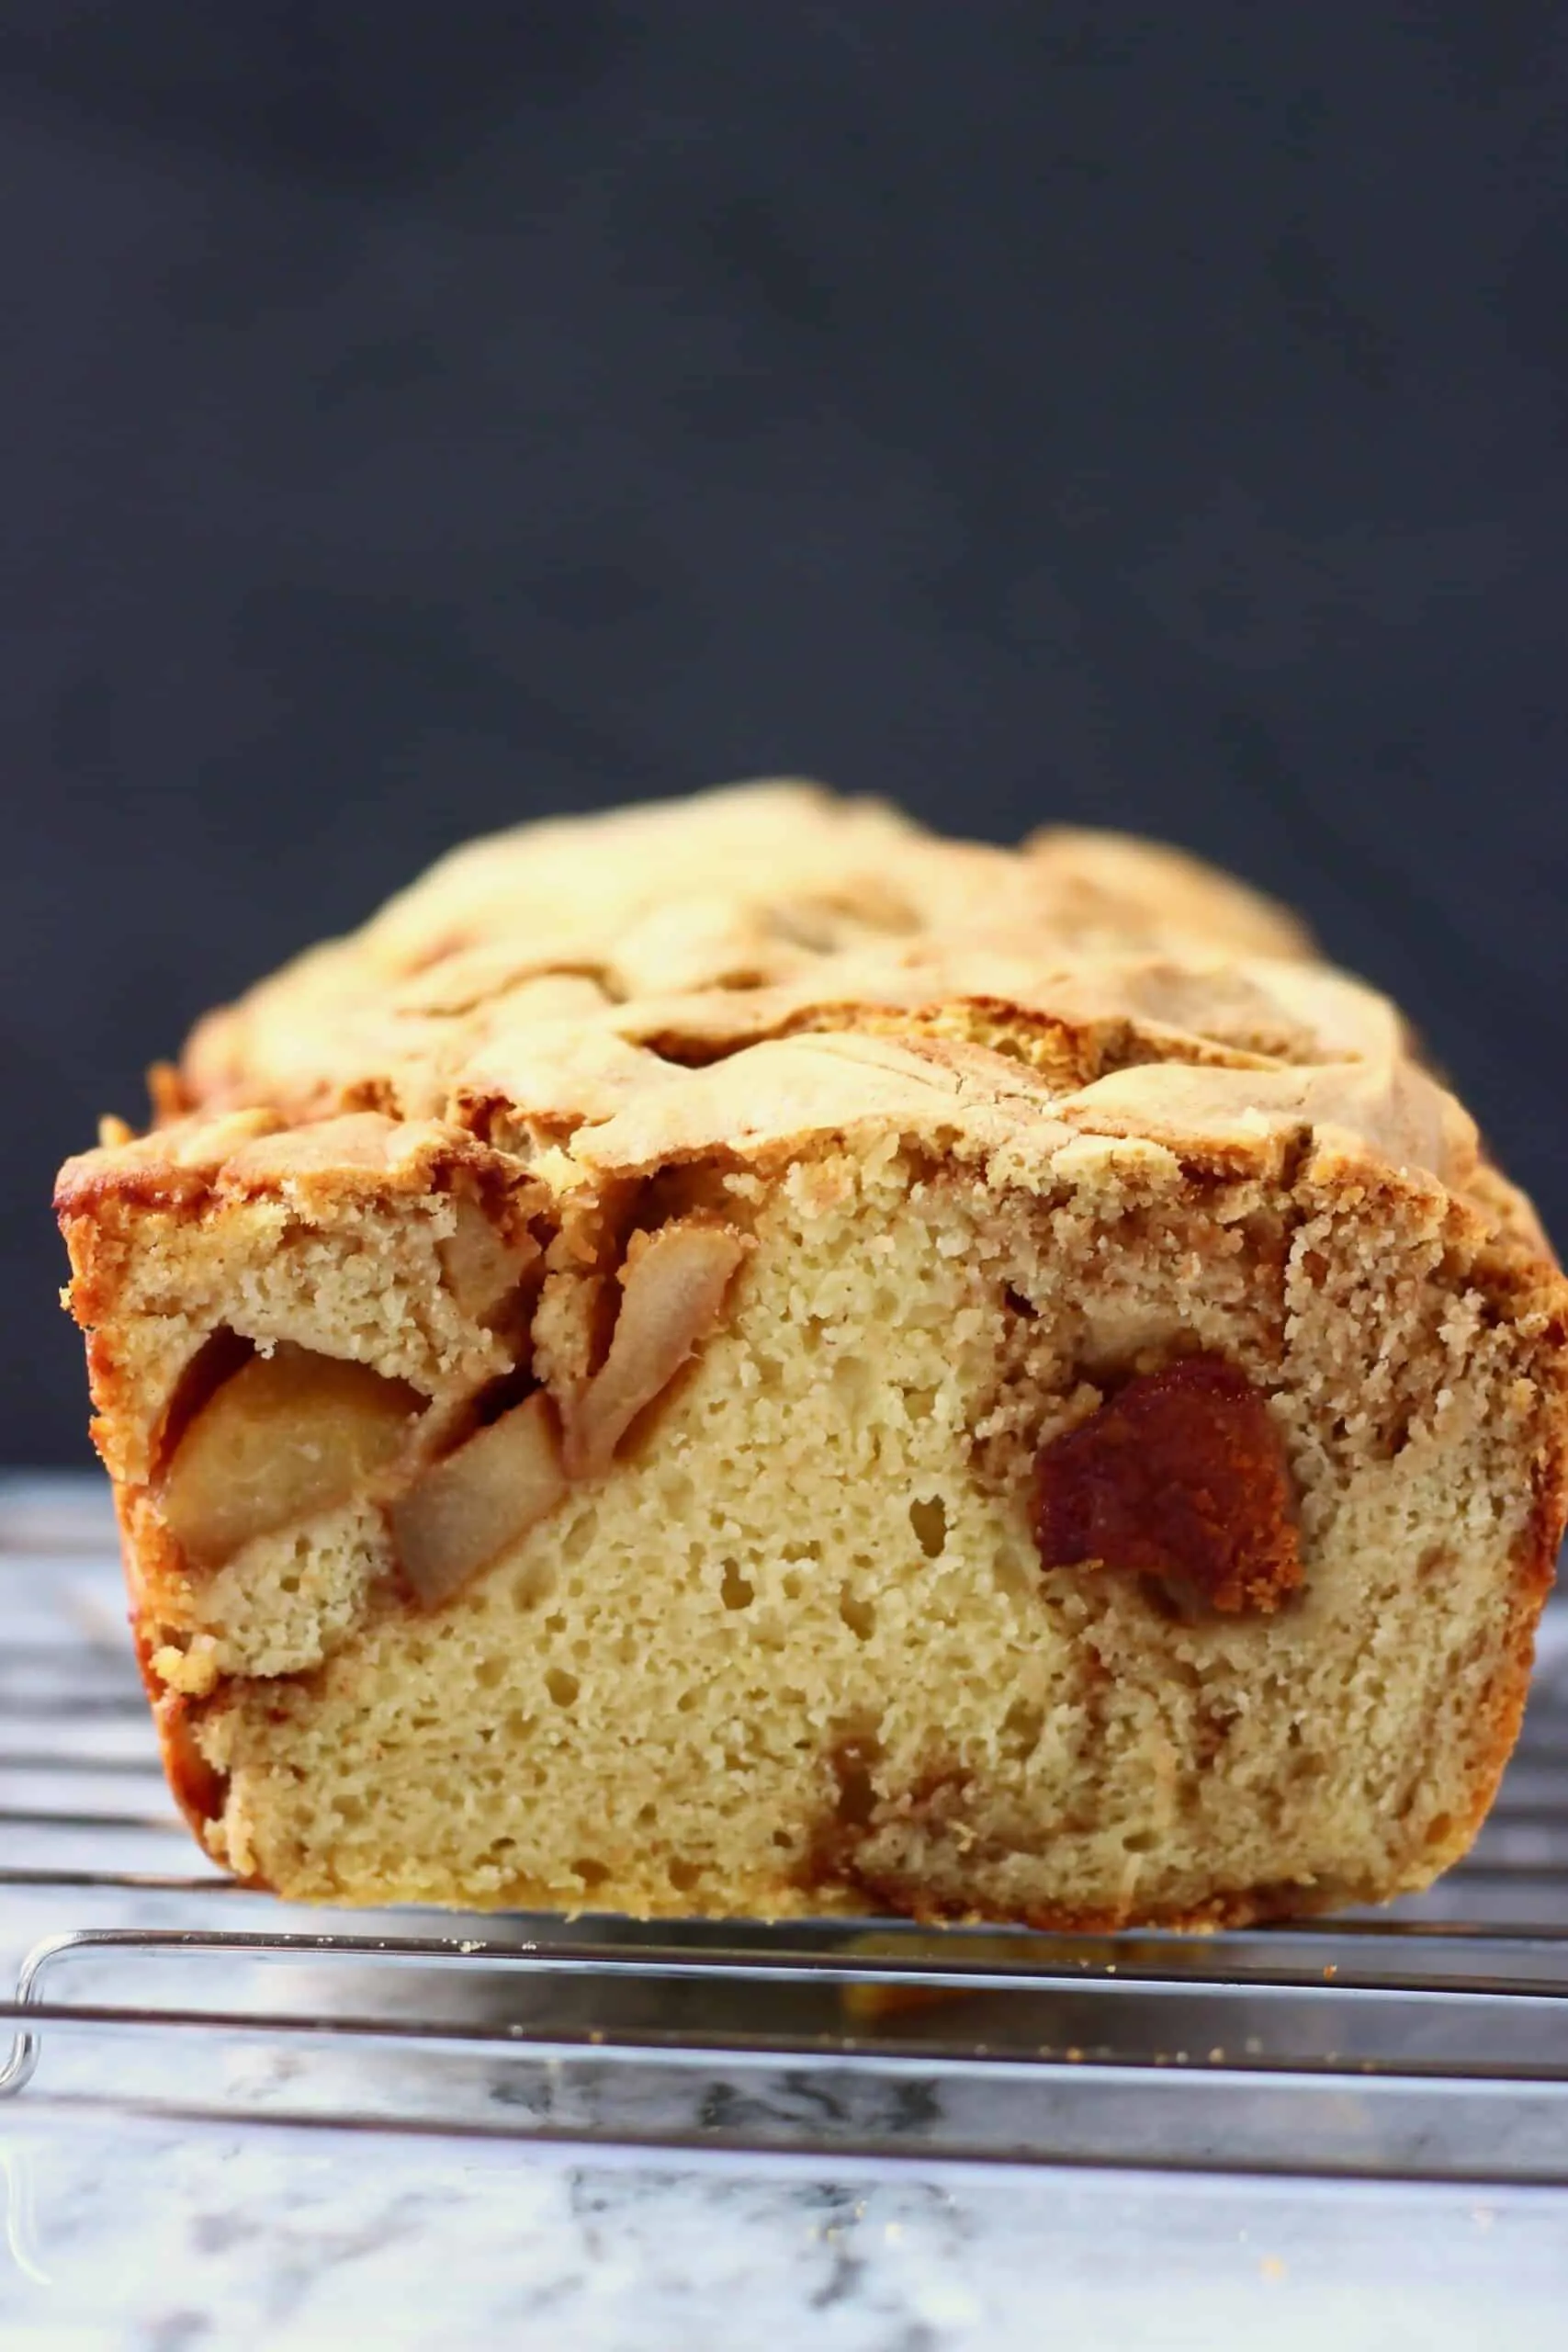 Sliced gluten-free vegan apple bread loaf against a black background